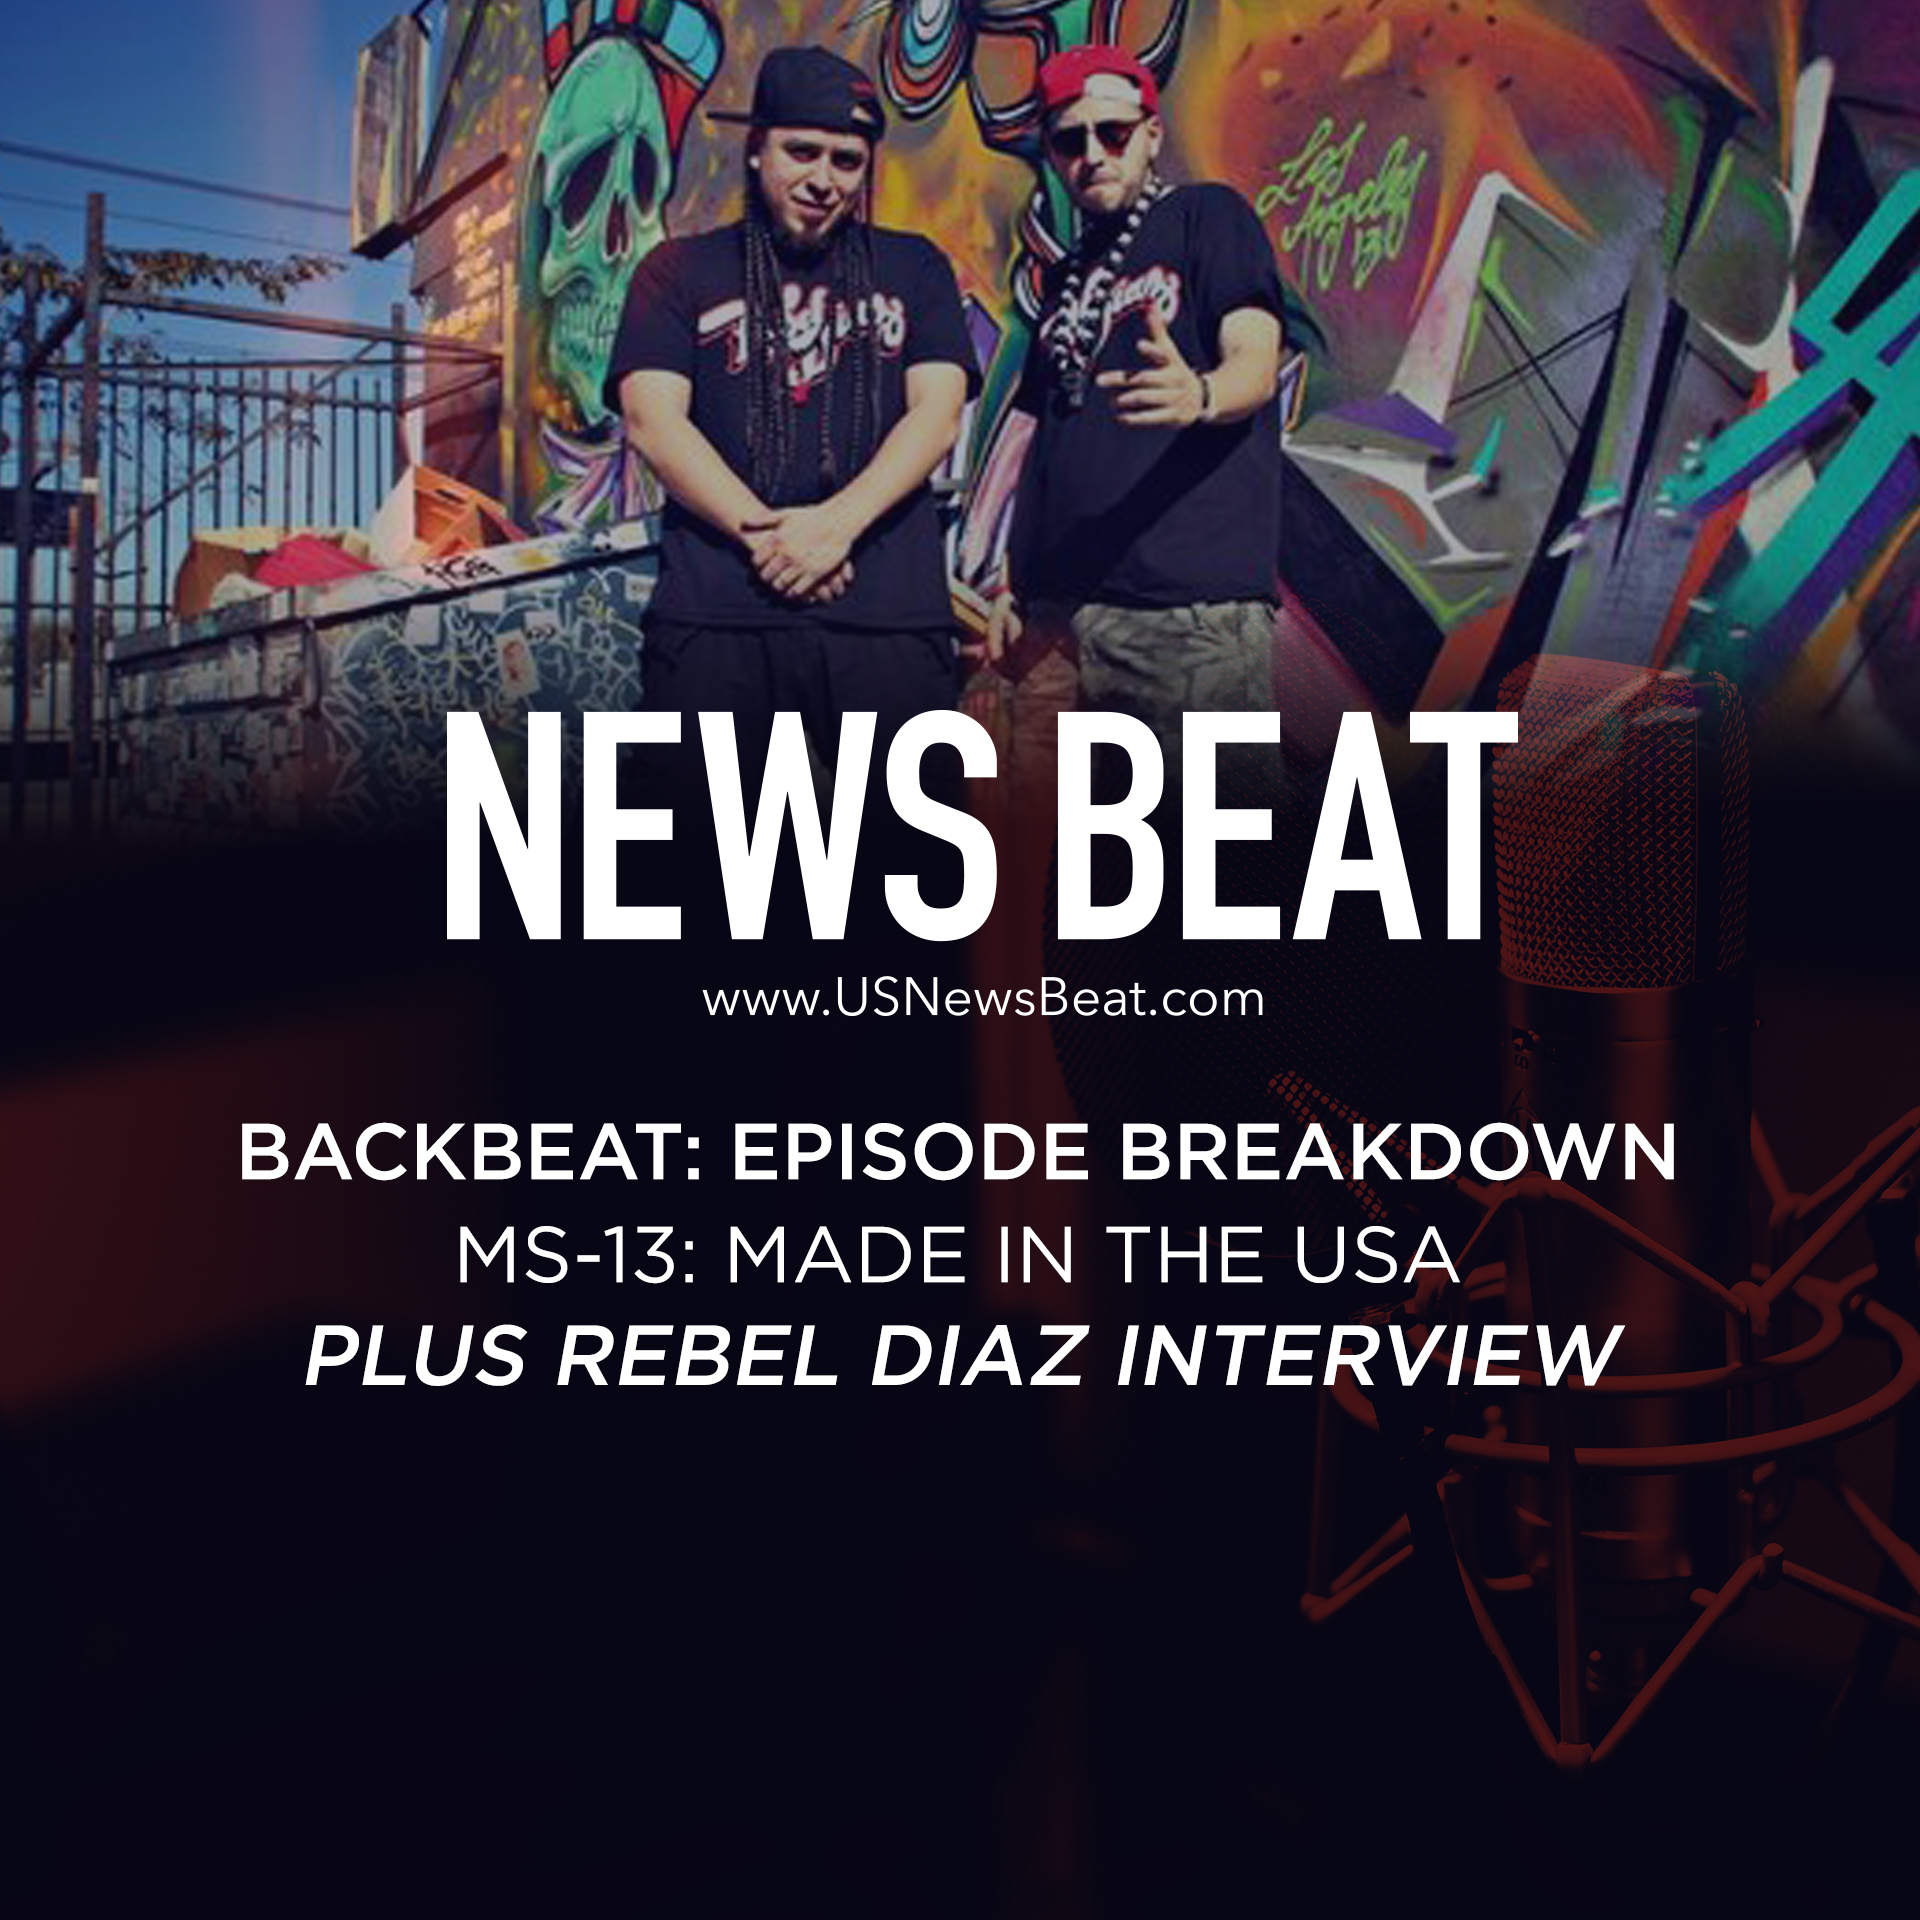 BackBeat Episode Breakdown: MS-13 plus Rebel Diaz Interview